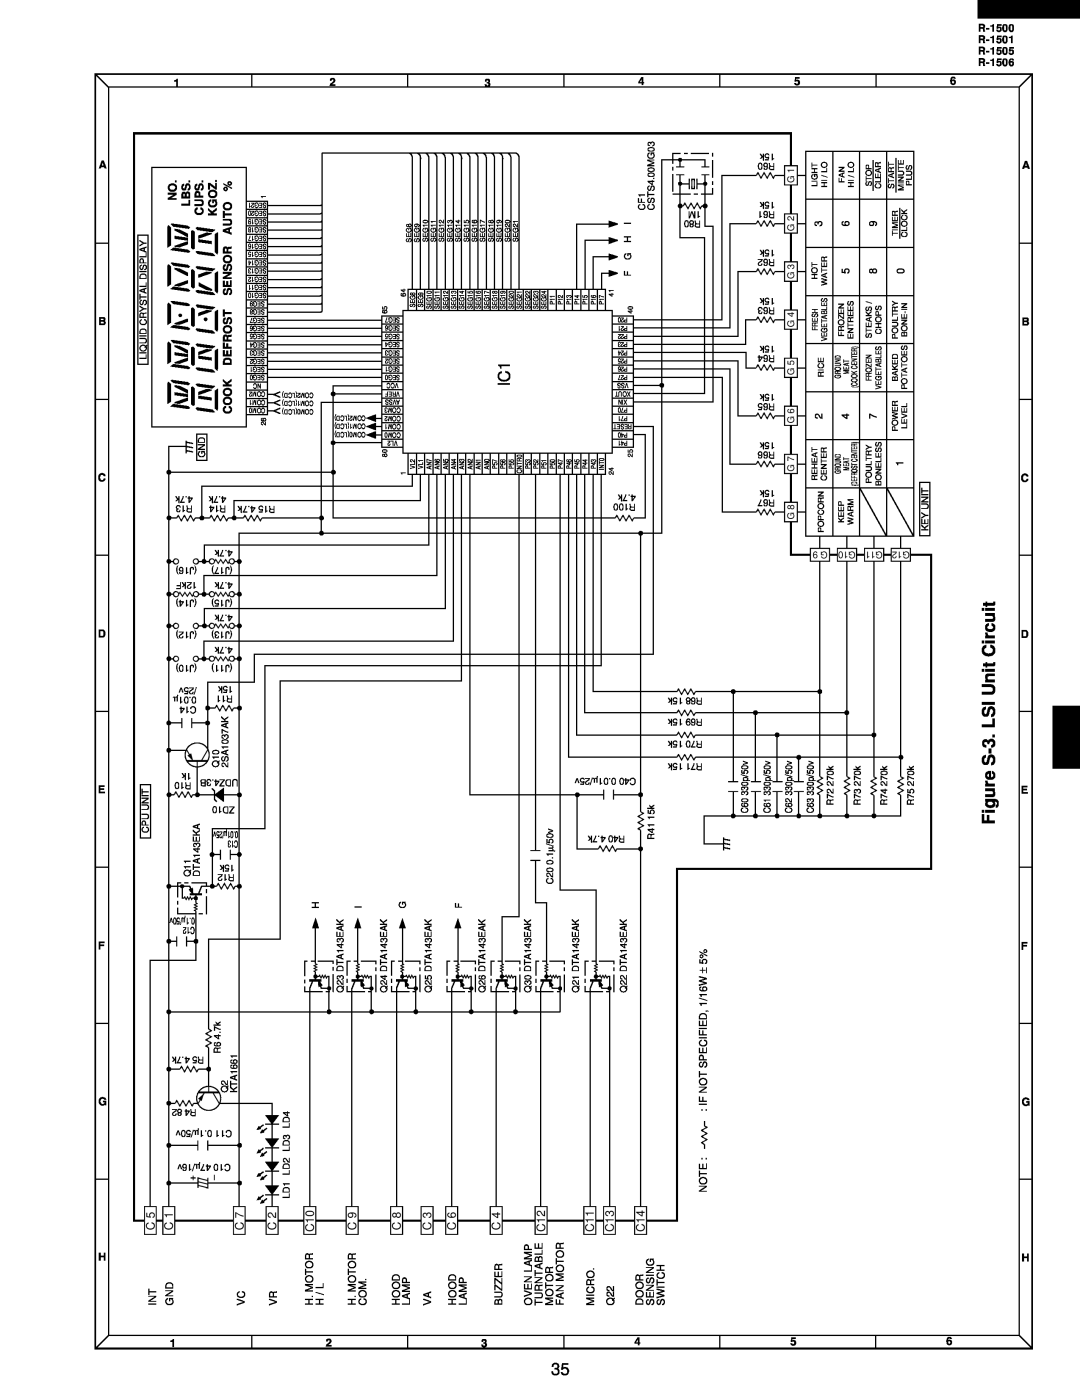 Sharp R-1505, R-1500, R-1501, R-1506 service manual Circuit, Unit, 3.LSI, FigureS, Kgoz, Auto % 